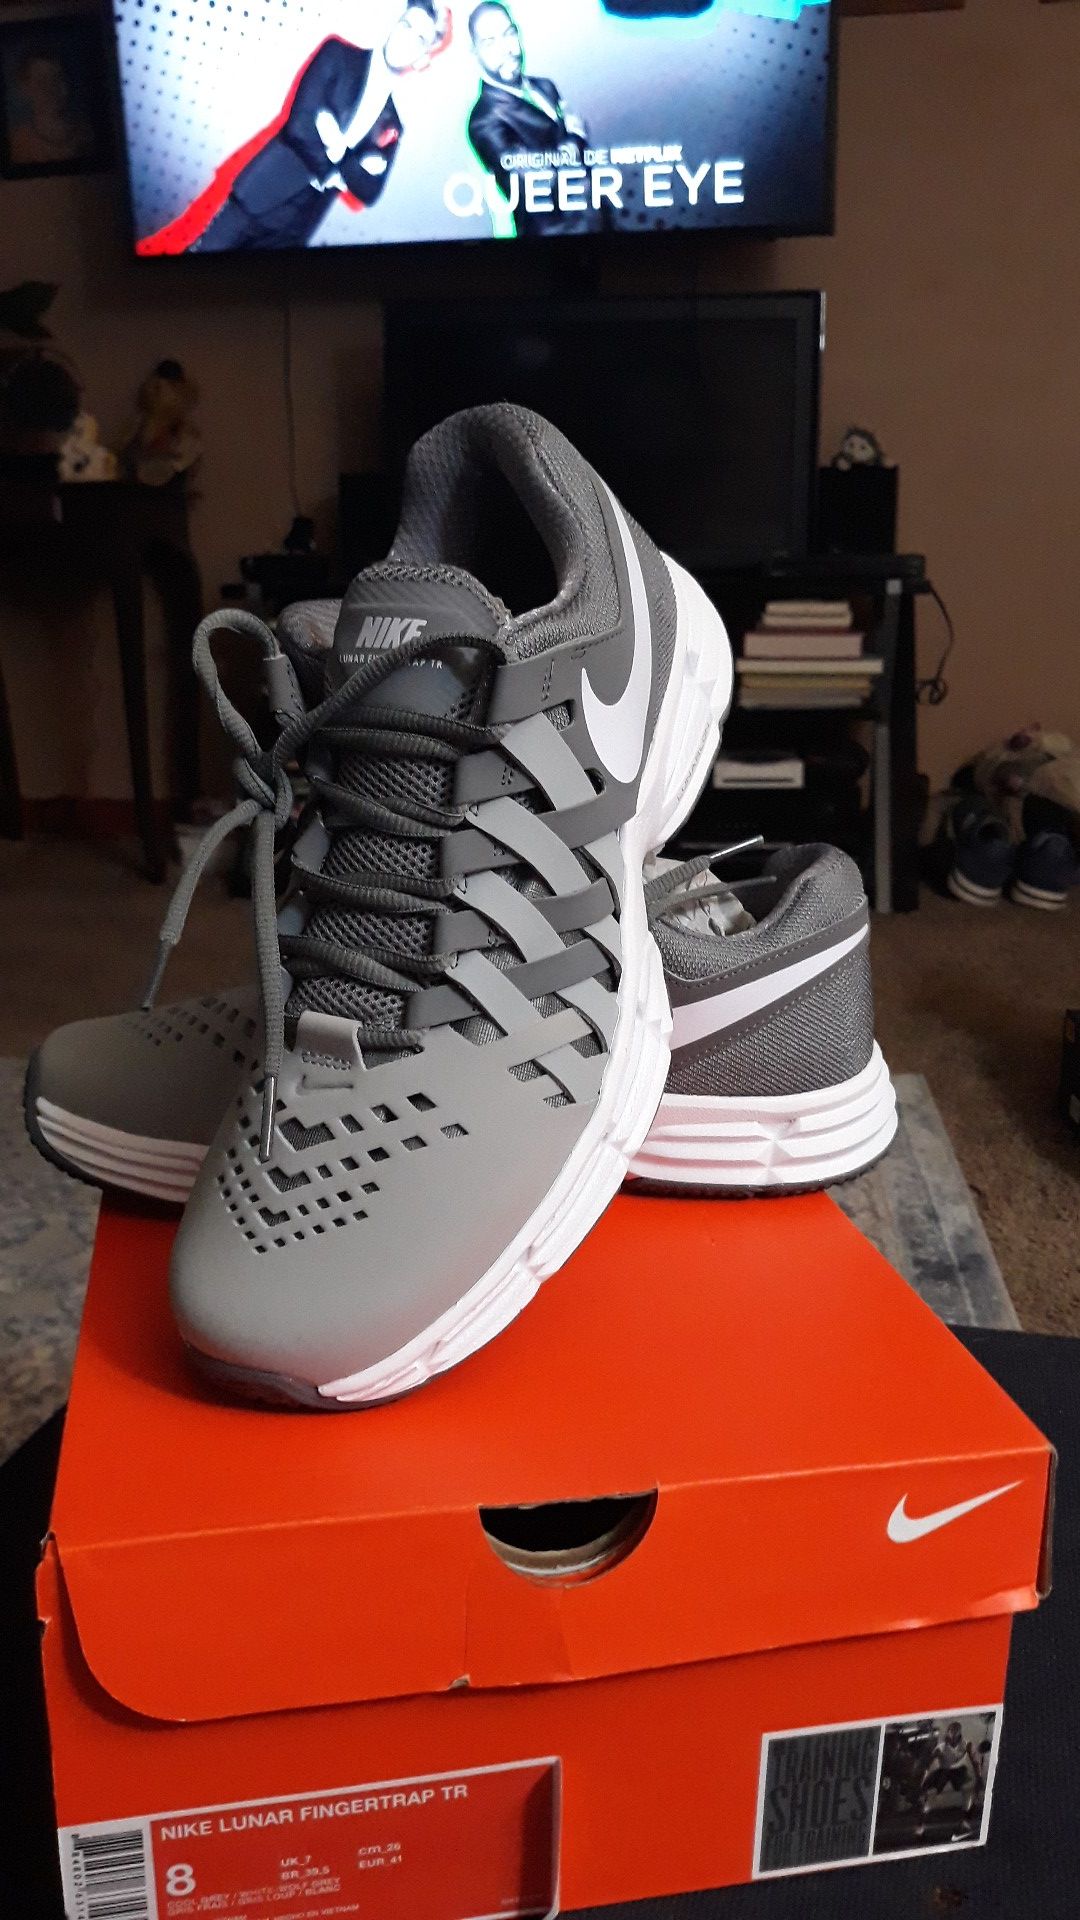 Brand New Nike Lunar Fingertrap Footwear size 8